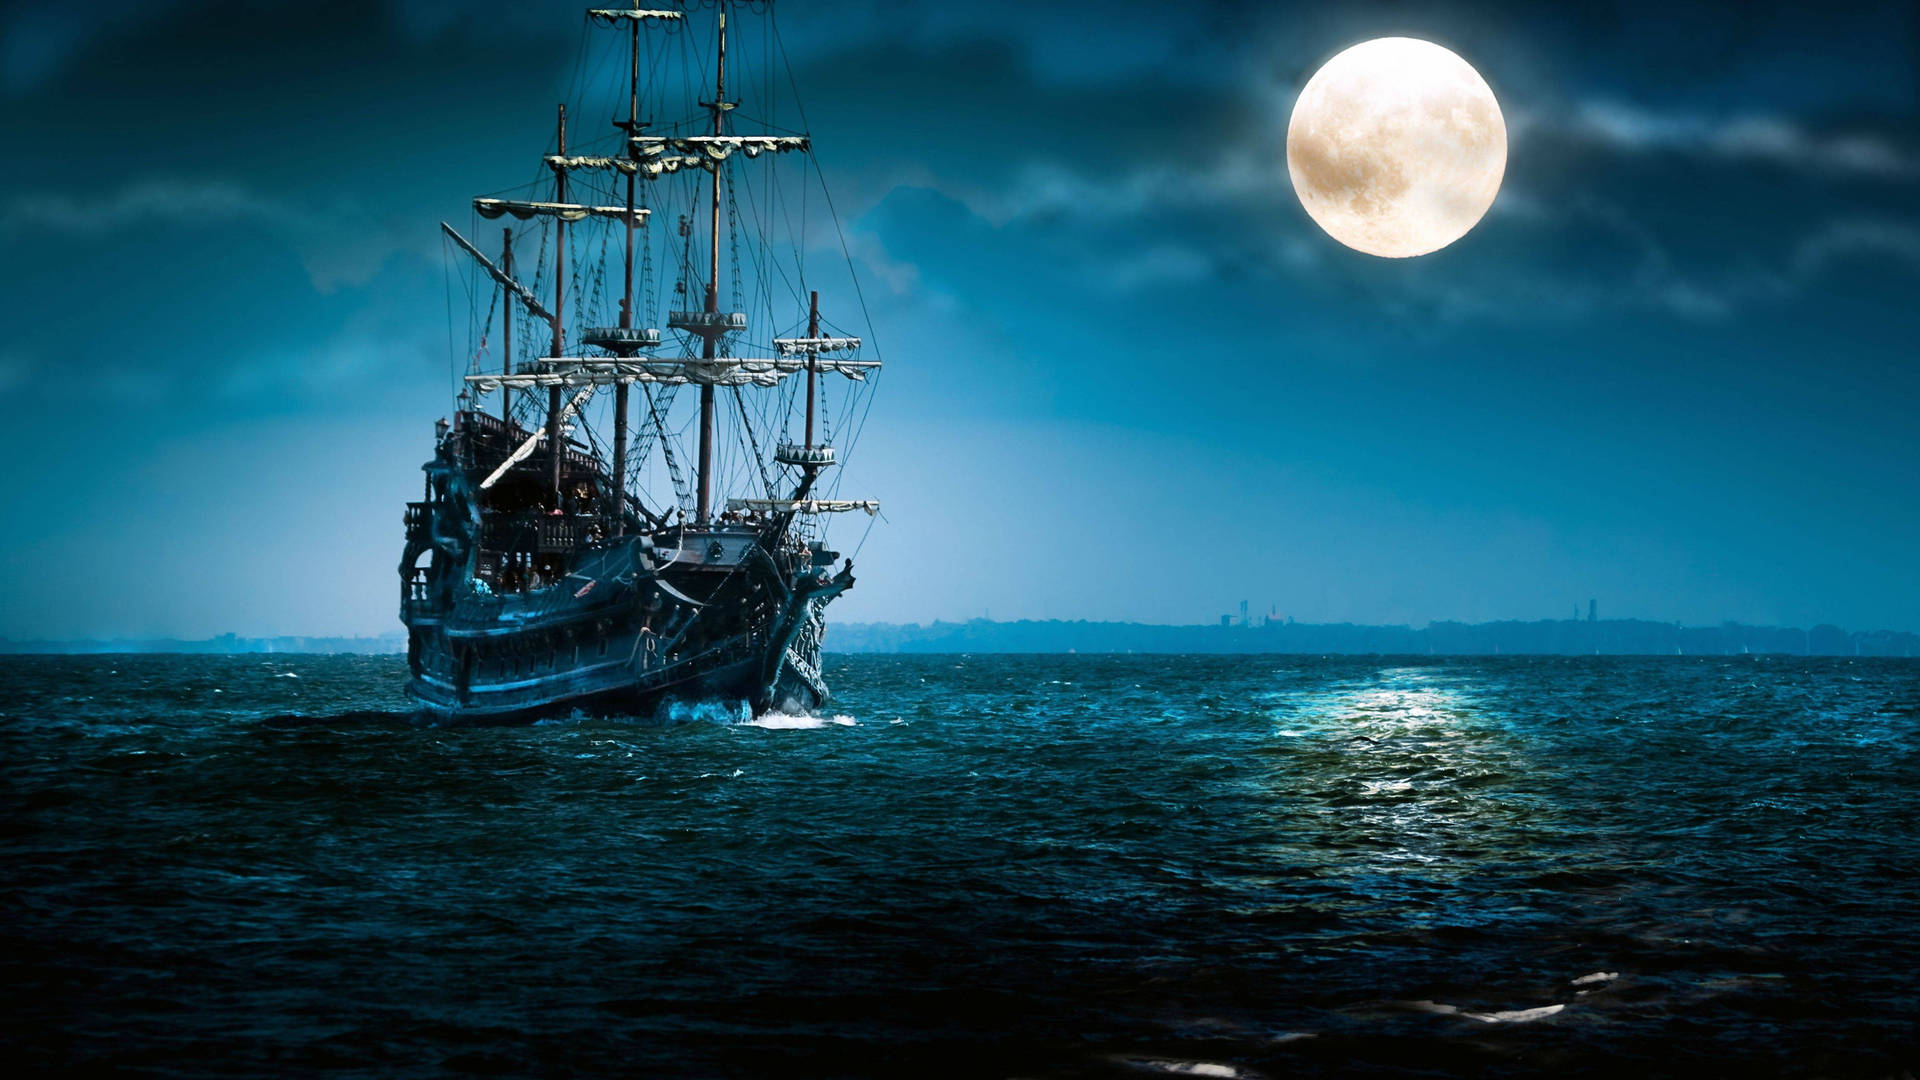 Black Pearl Sailing Ship